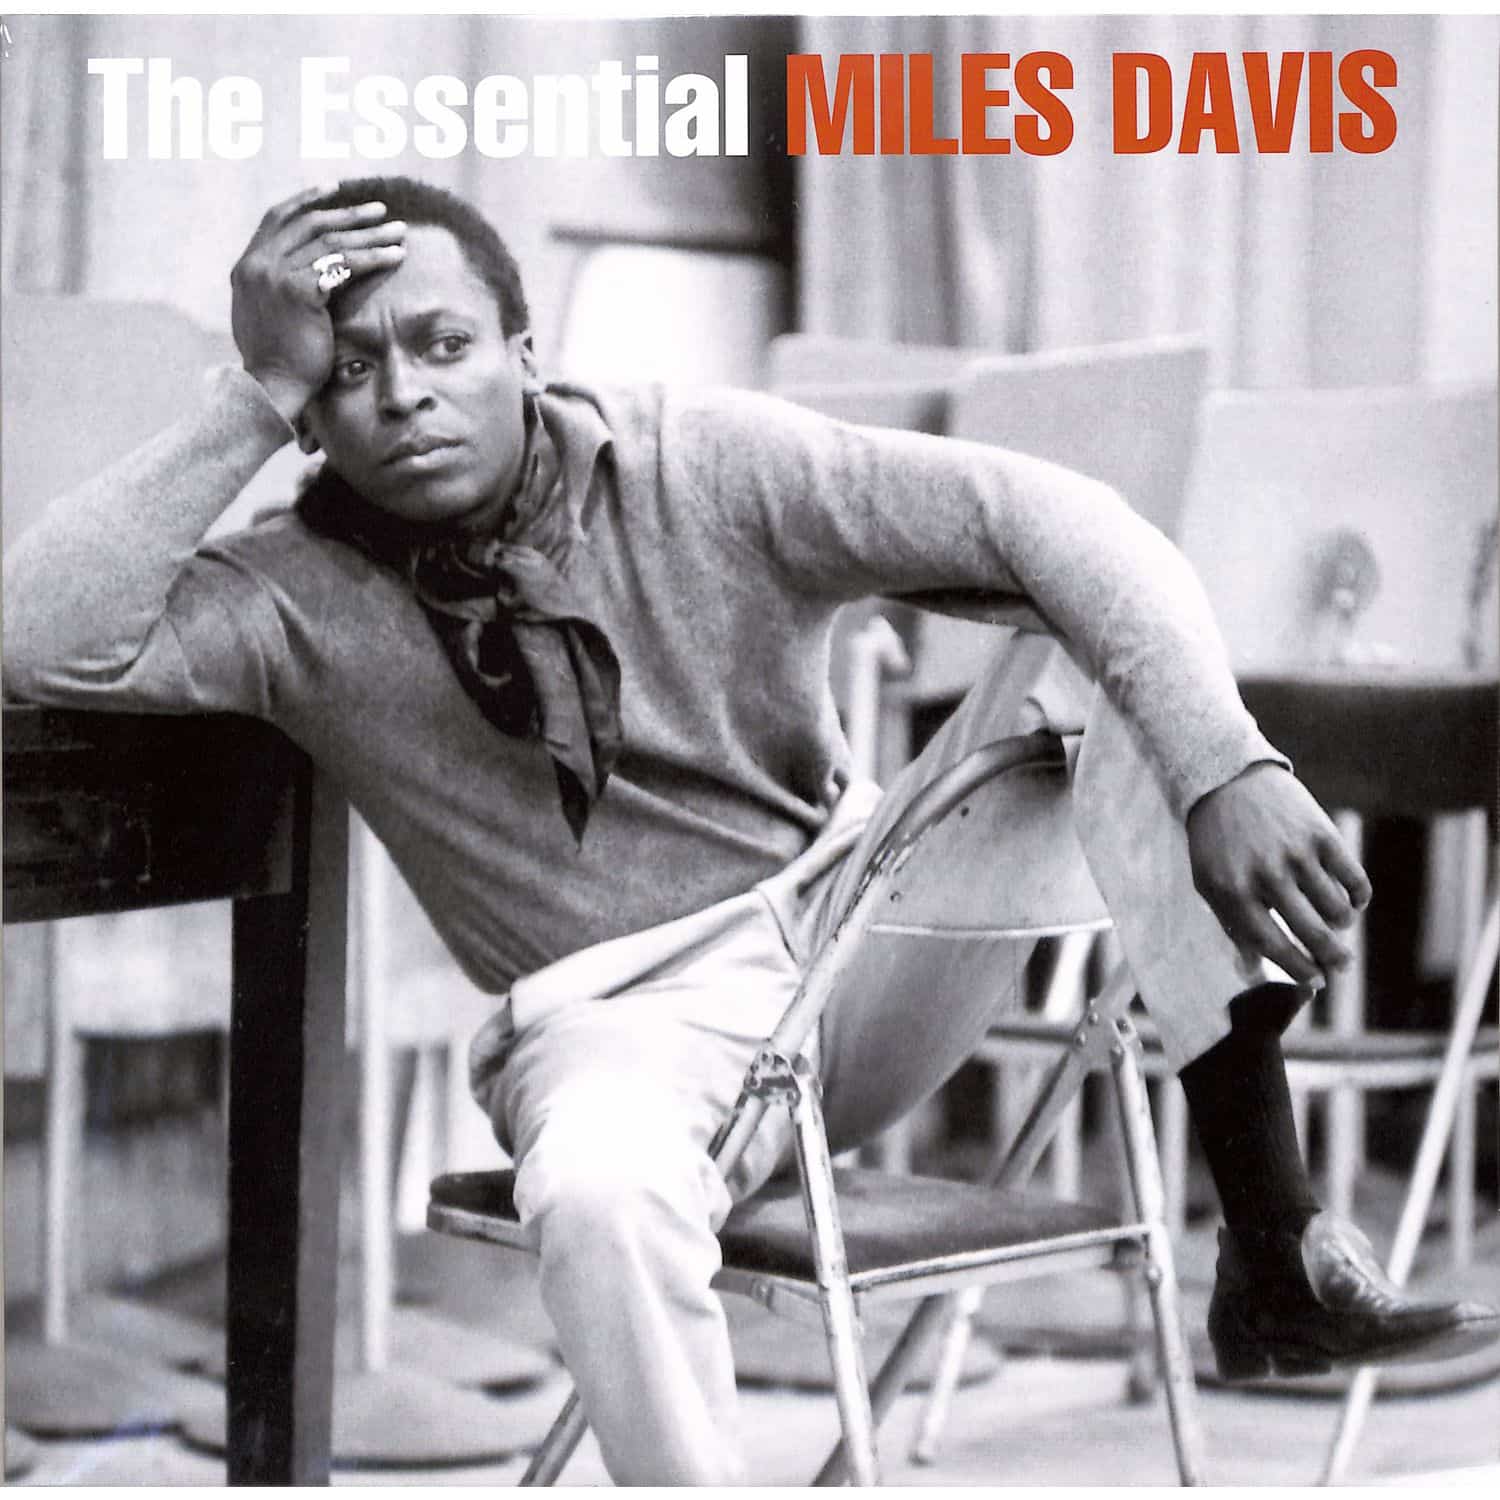 Miles Davis - THE ESSENTIAL 